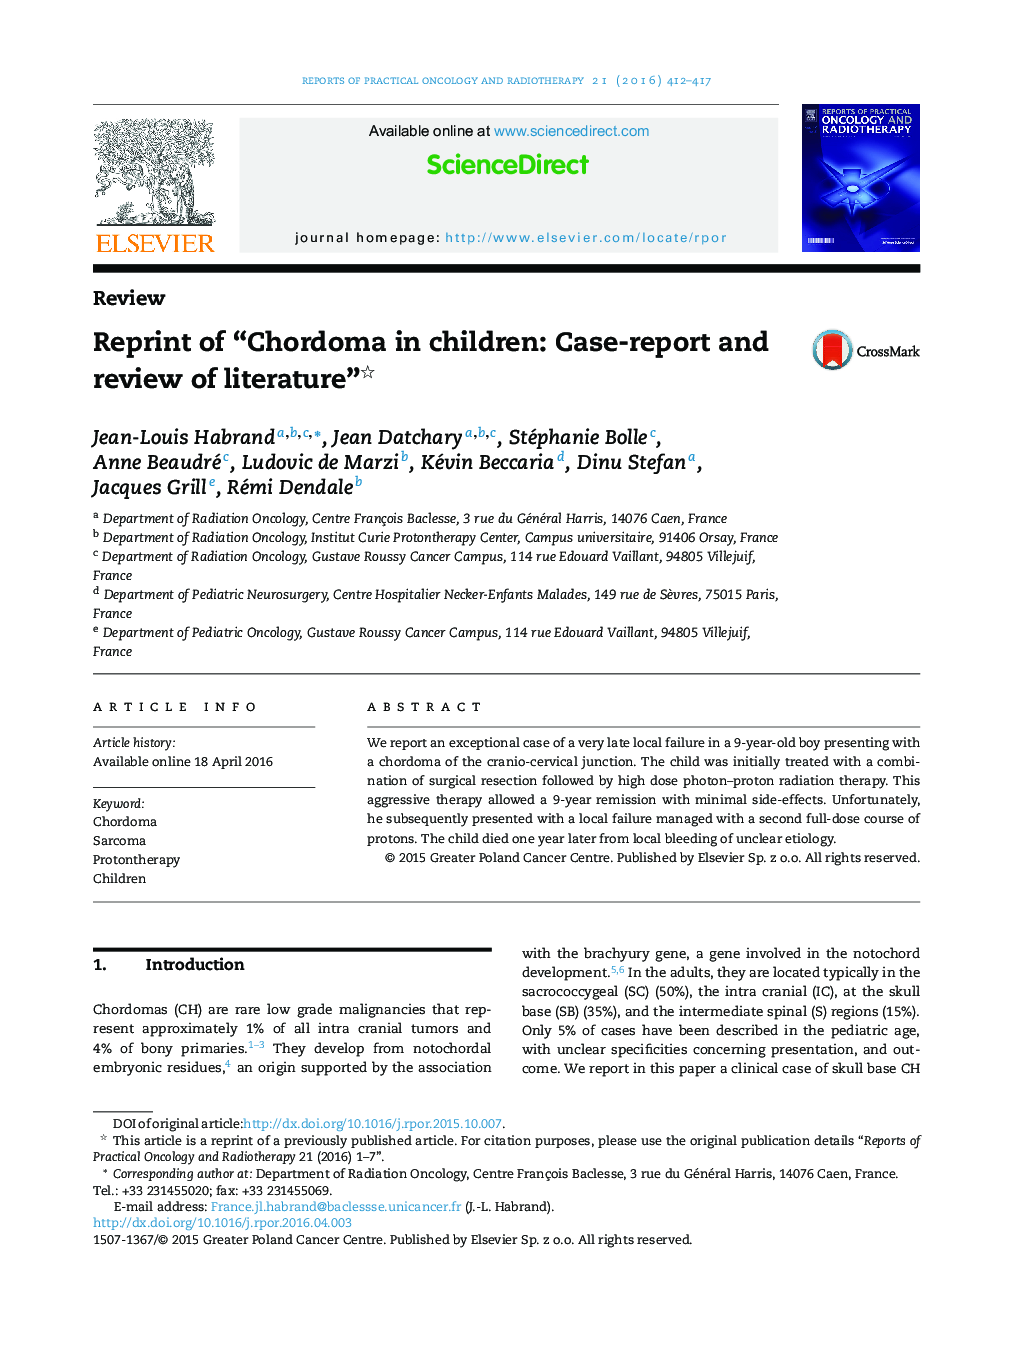 چاپ جدید از "Chordoma در کودکان: گزارش موردی و بررسی مقالات"